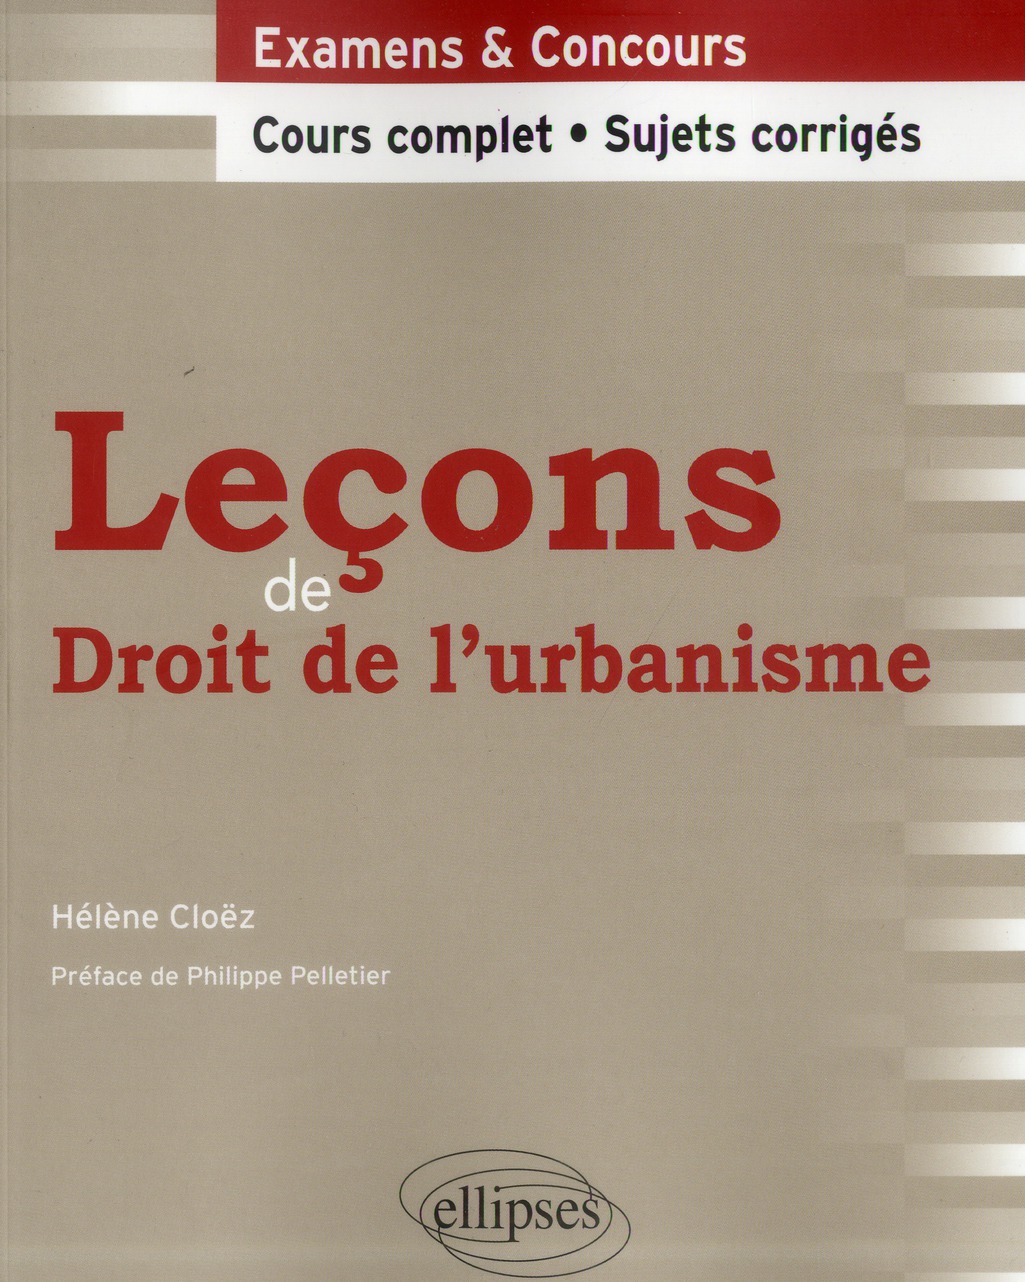 LECONS DE DROIT DE L'URBANISME. COURS COMPLET ET SUJETS CORRIGES